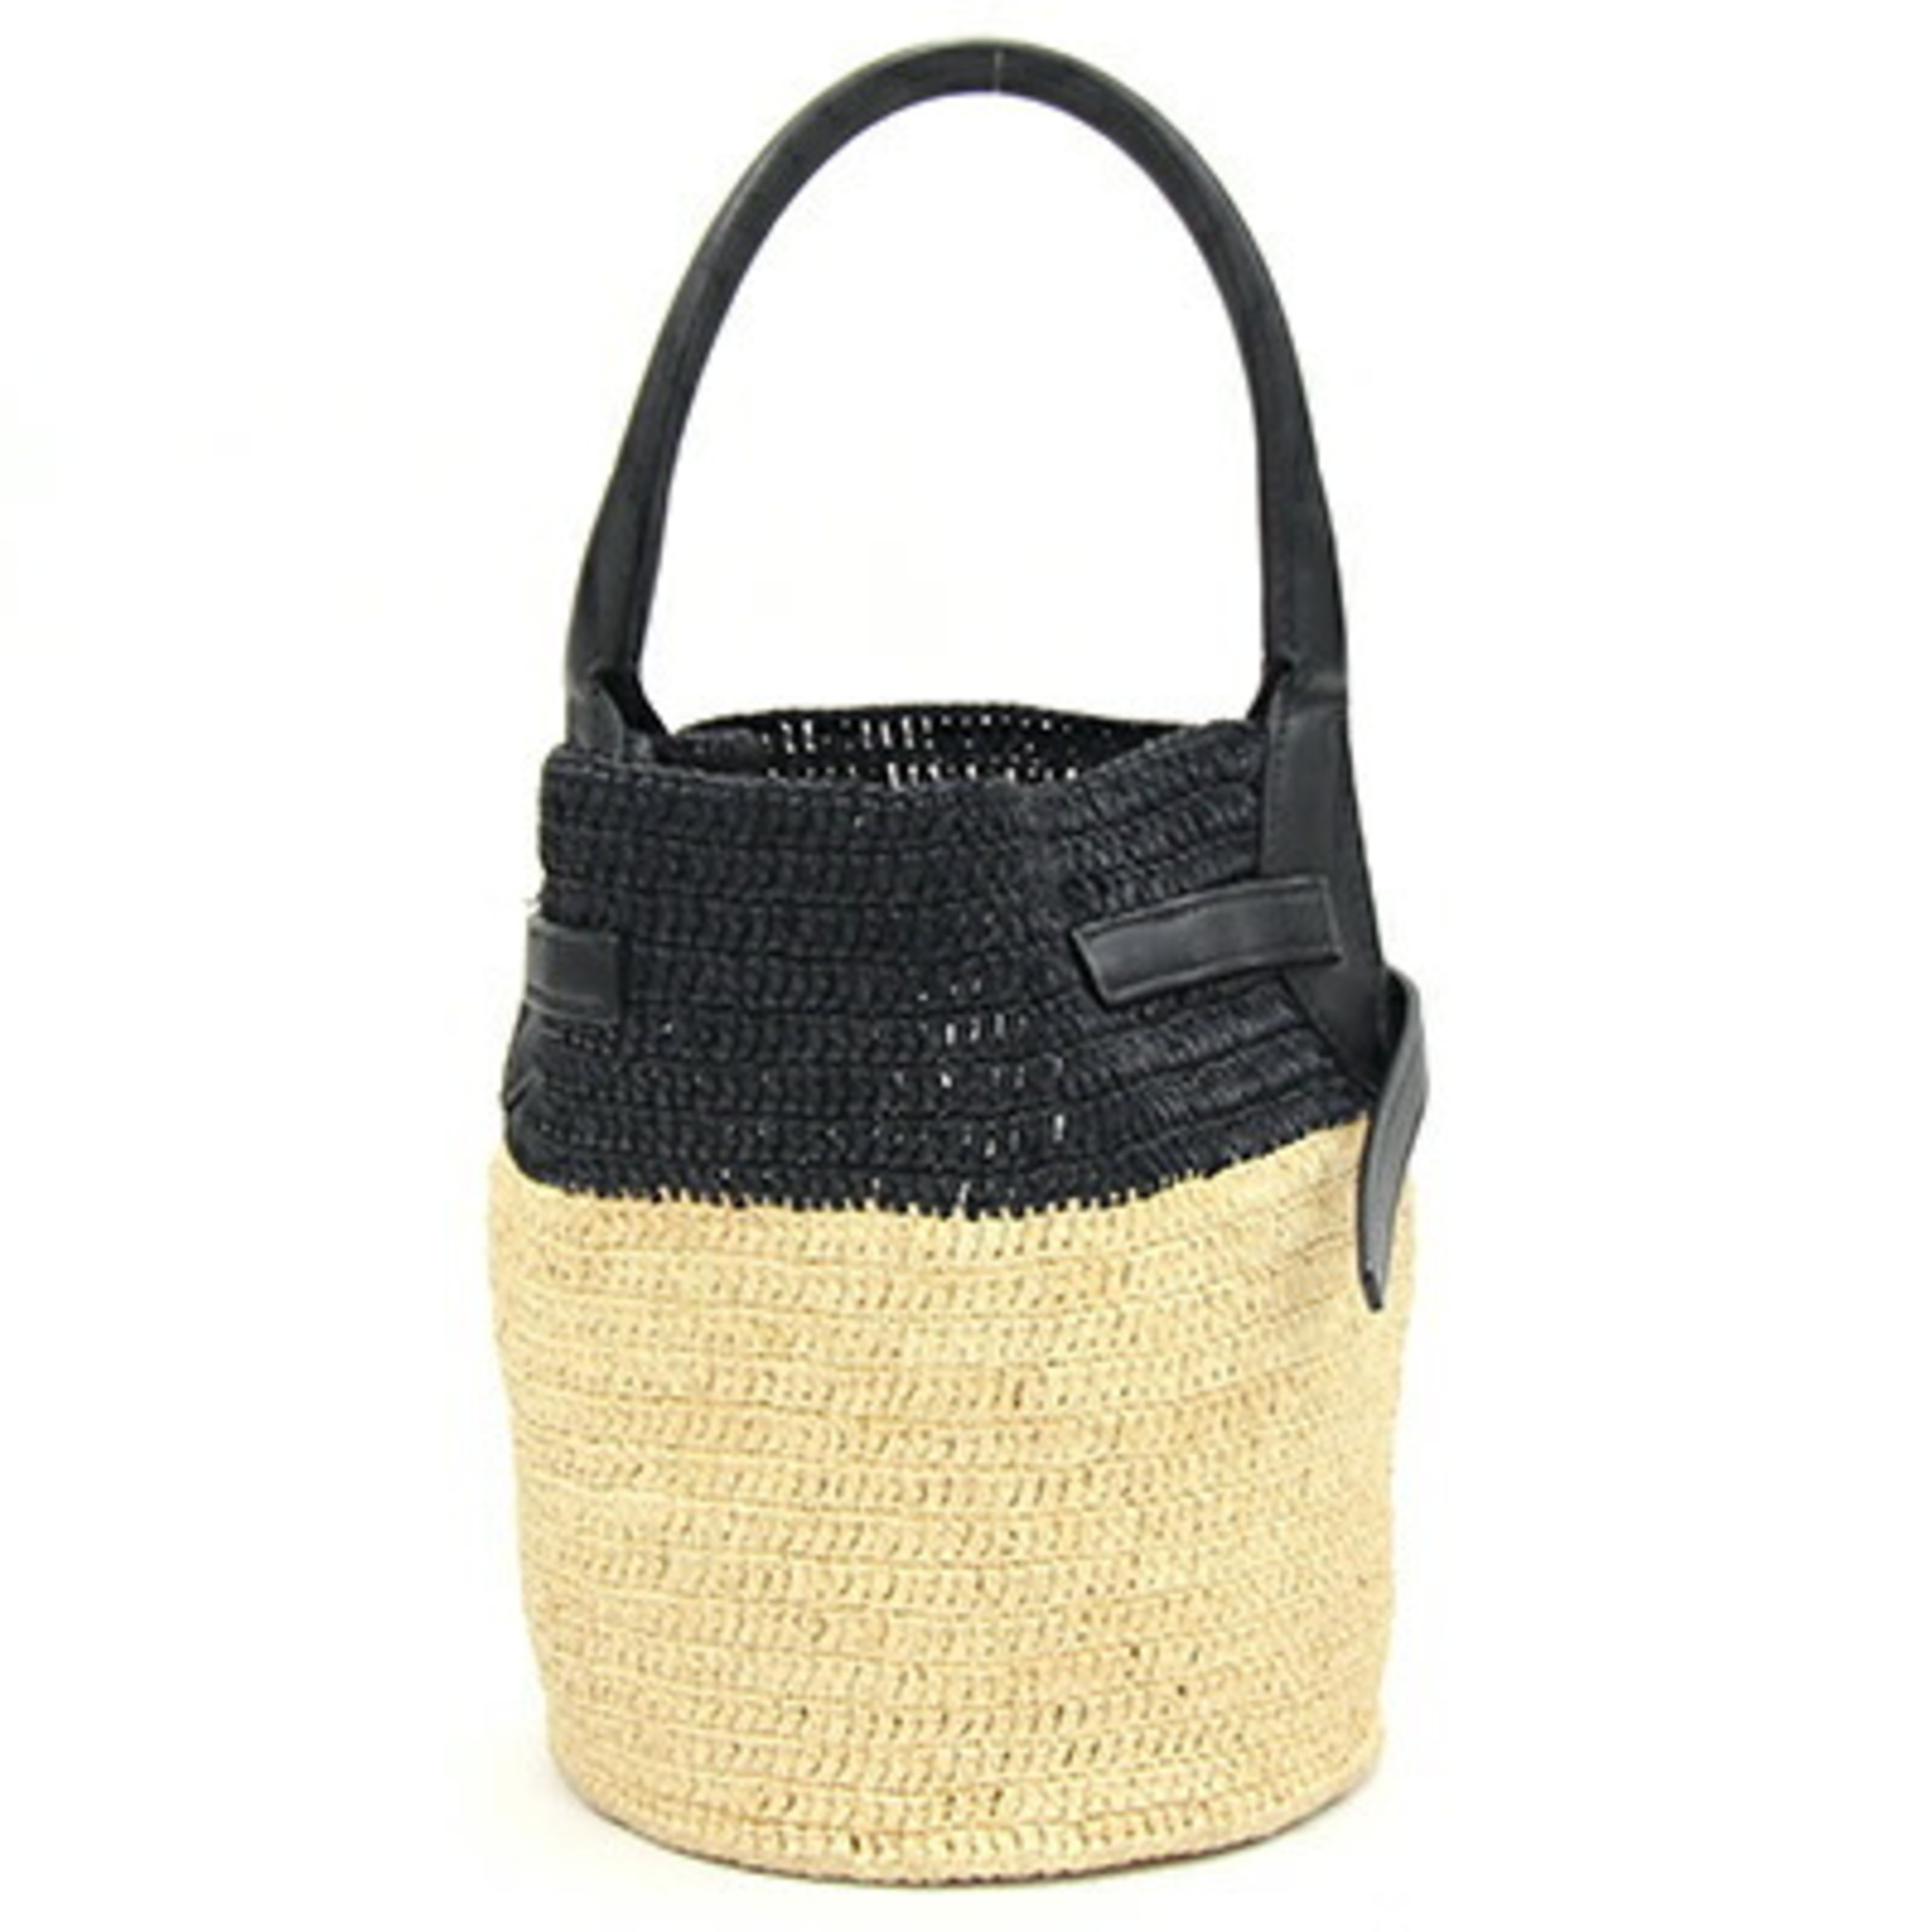 Celine Handbag Big Bag Nano Bucket 187242 Black Beige Raffia Leather Shoulder Basket Women's CELINE